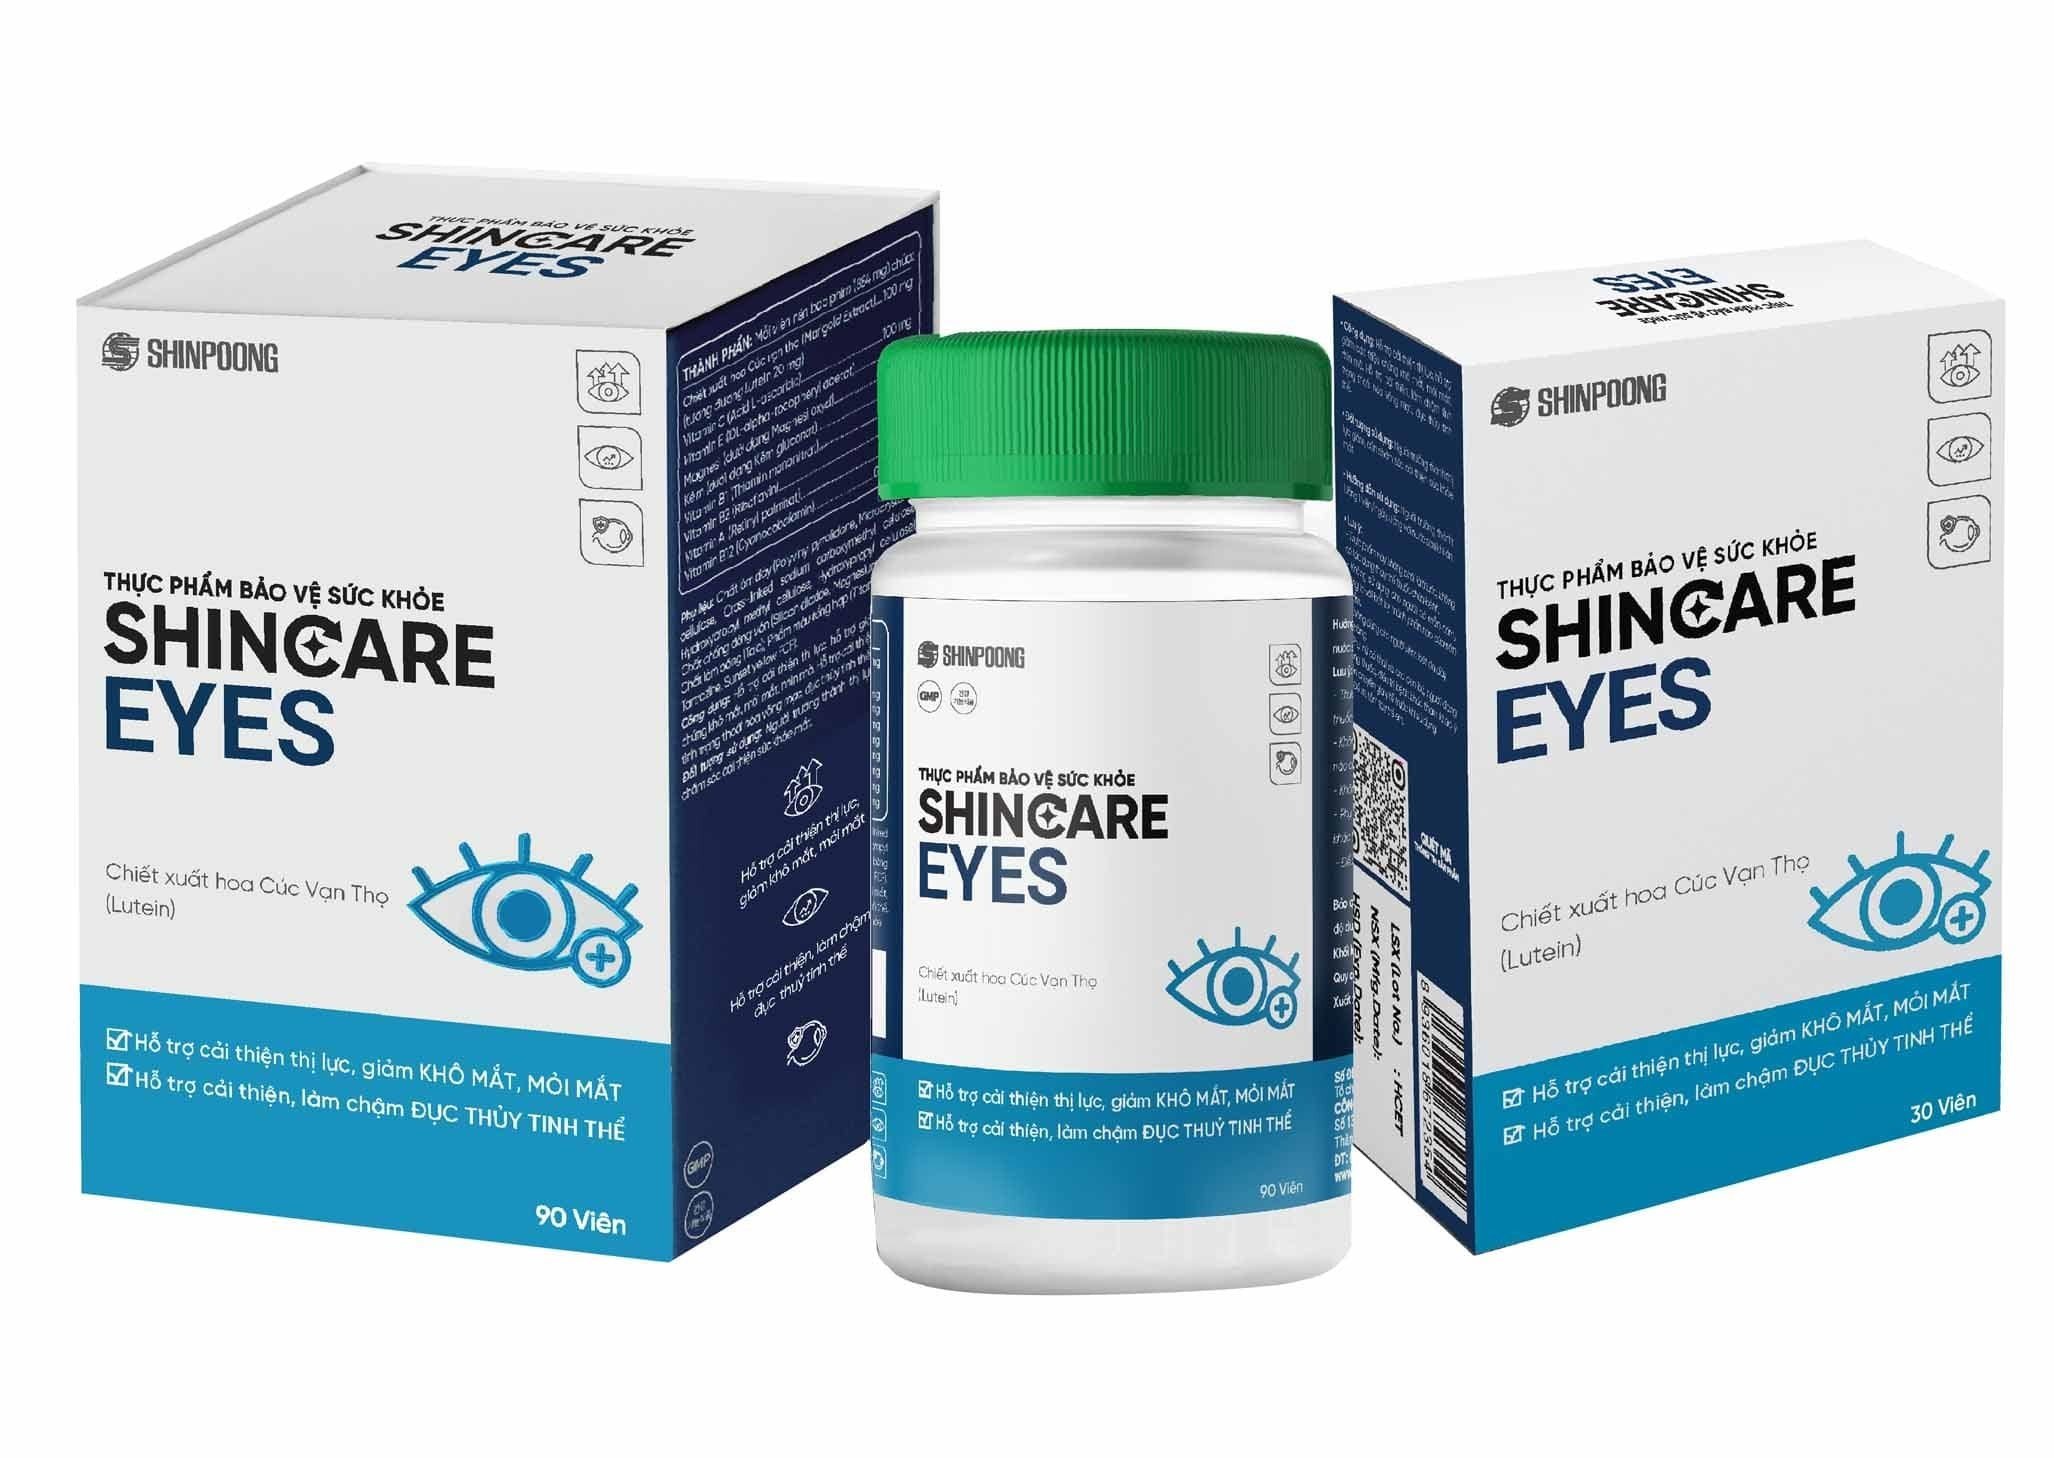 Viên Uống SHINCARE EYES - Hỗ trợ cải thiện thị lực. Hỗ trợ giảm các triệu chứng khô mắt, mỏi mắt, nhìn mờ - Hộp 30 viên.